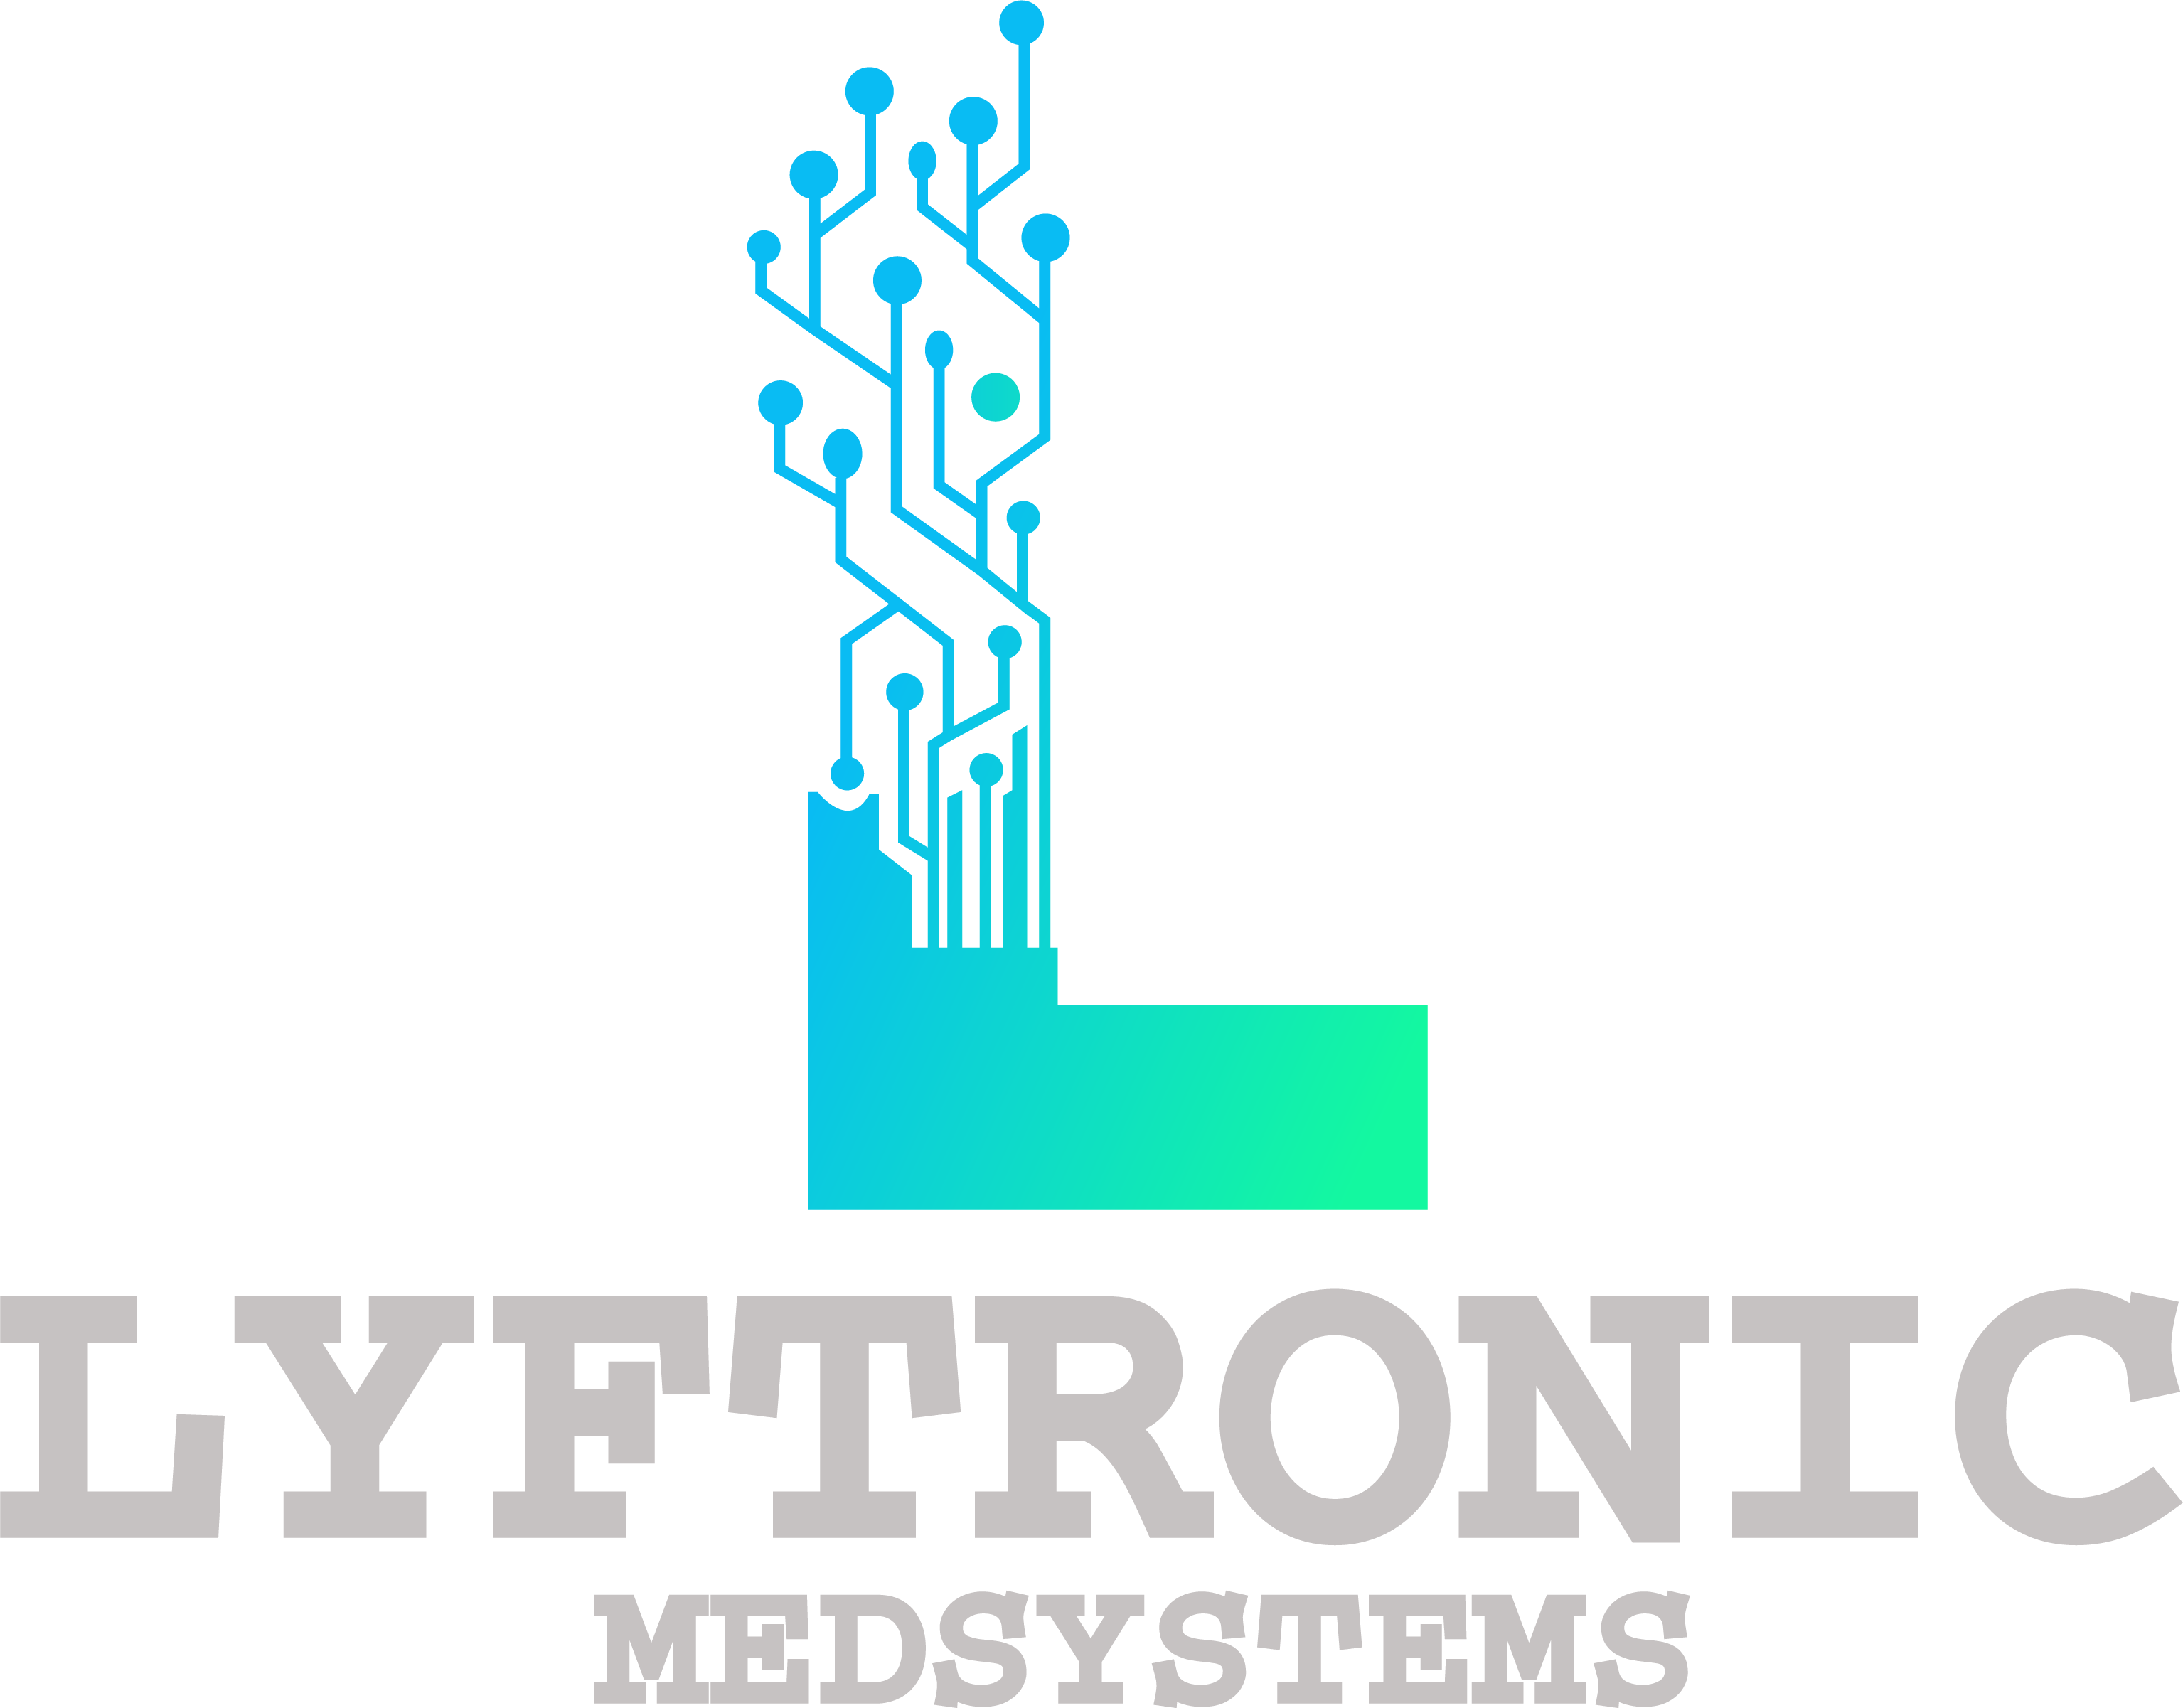 Lyftronic Medsystems